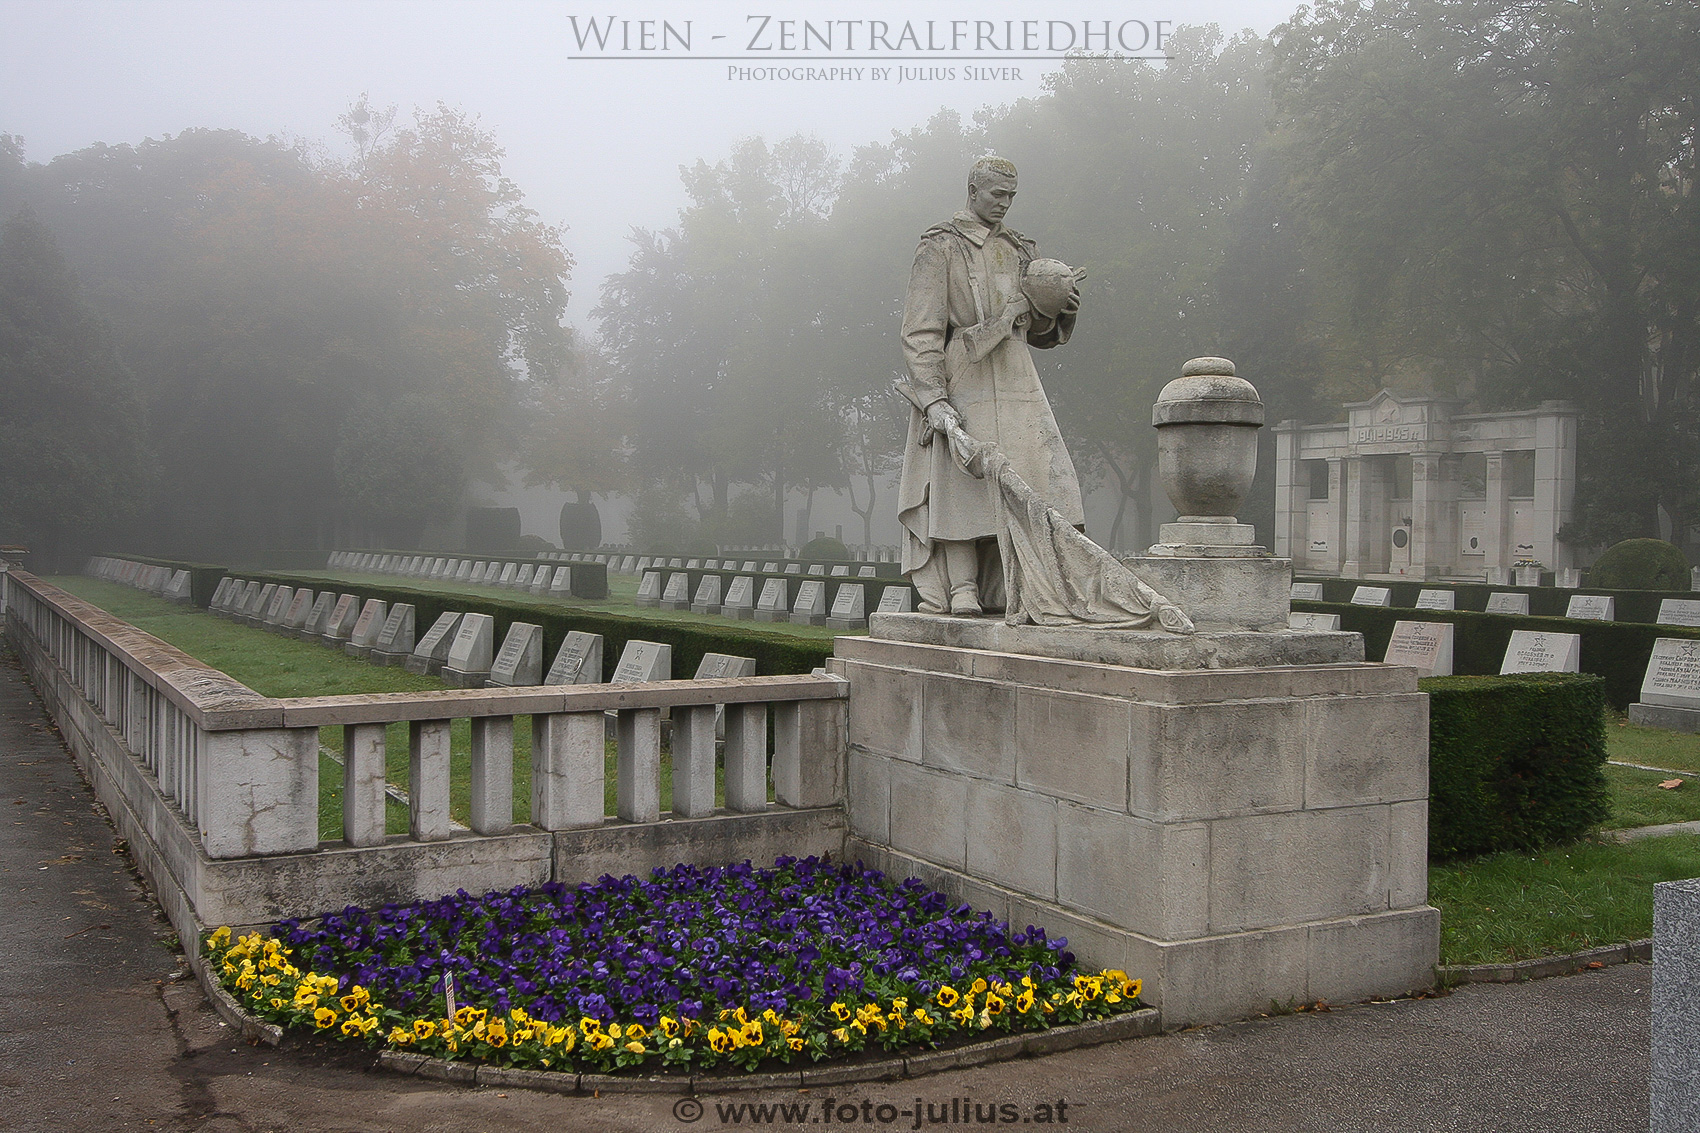 W4012a_Zentralfriedhof_Wien.jpg, 896kB